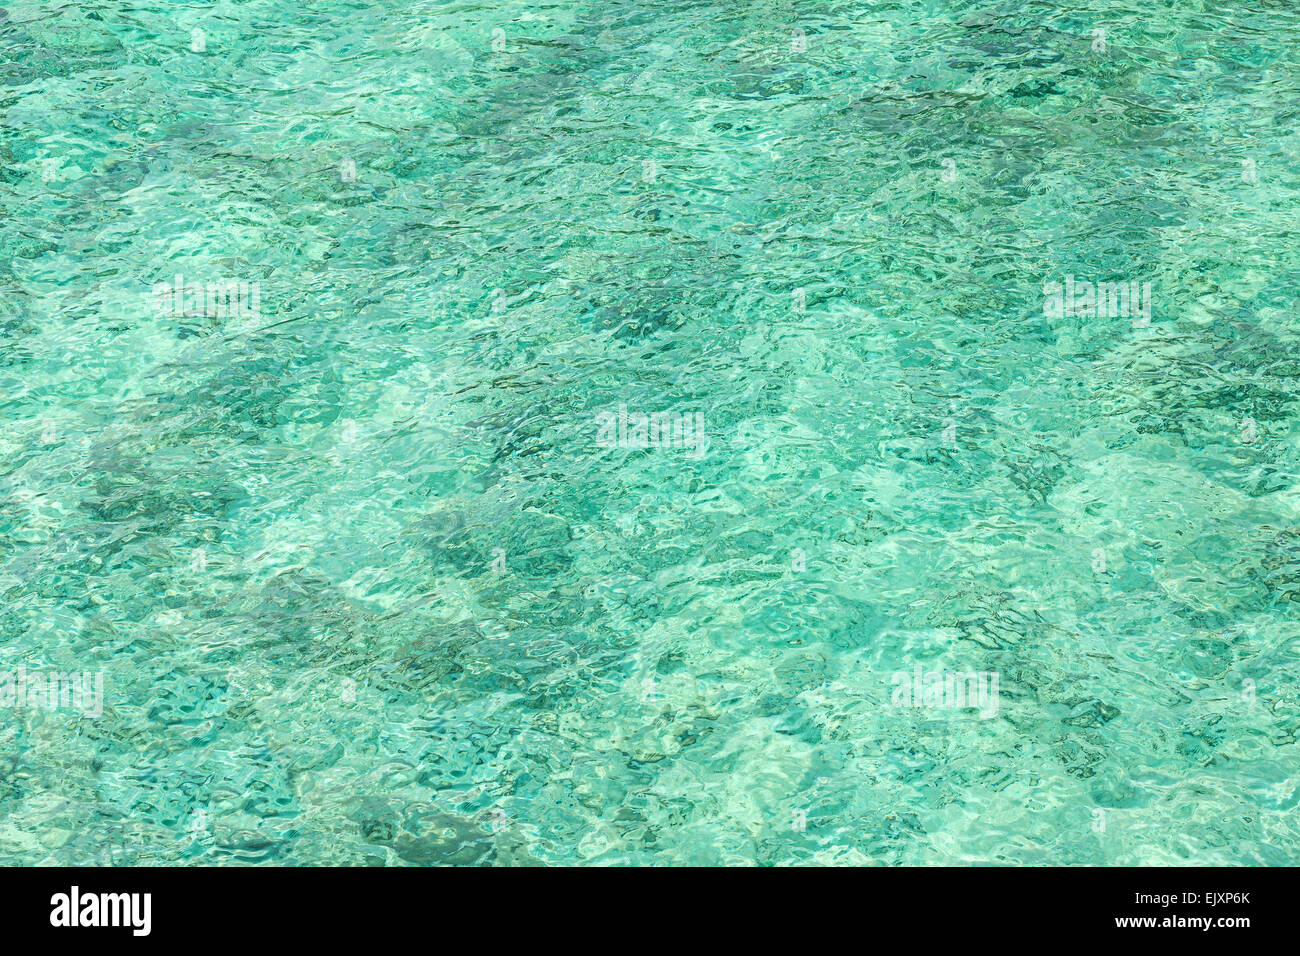 Zusammenfassung Hintergrund des kristallklaren Meerwassers gemacht. Stockfoto